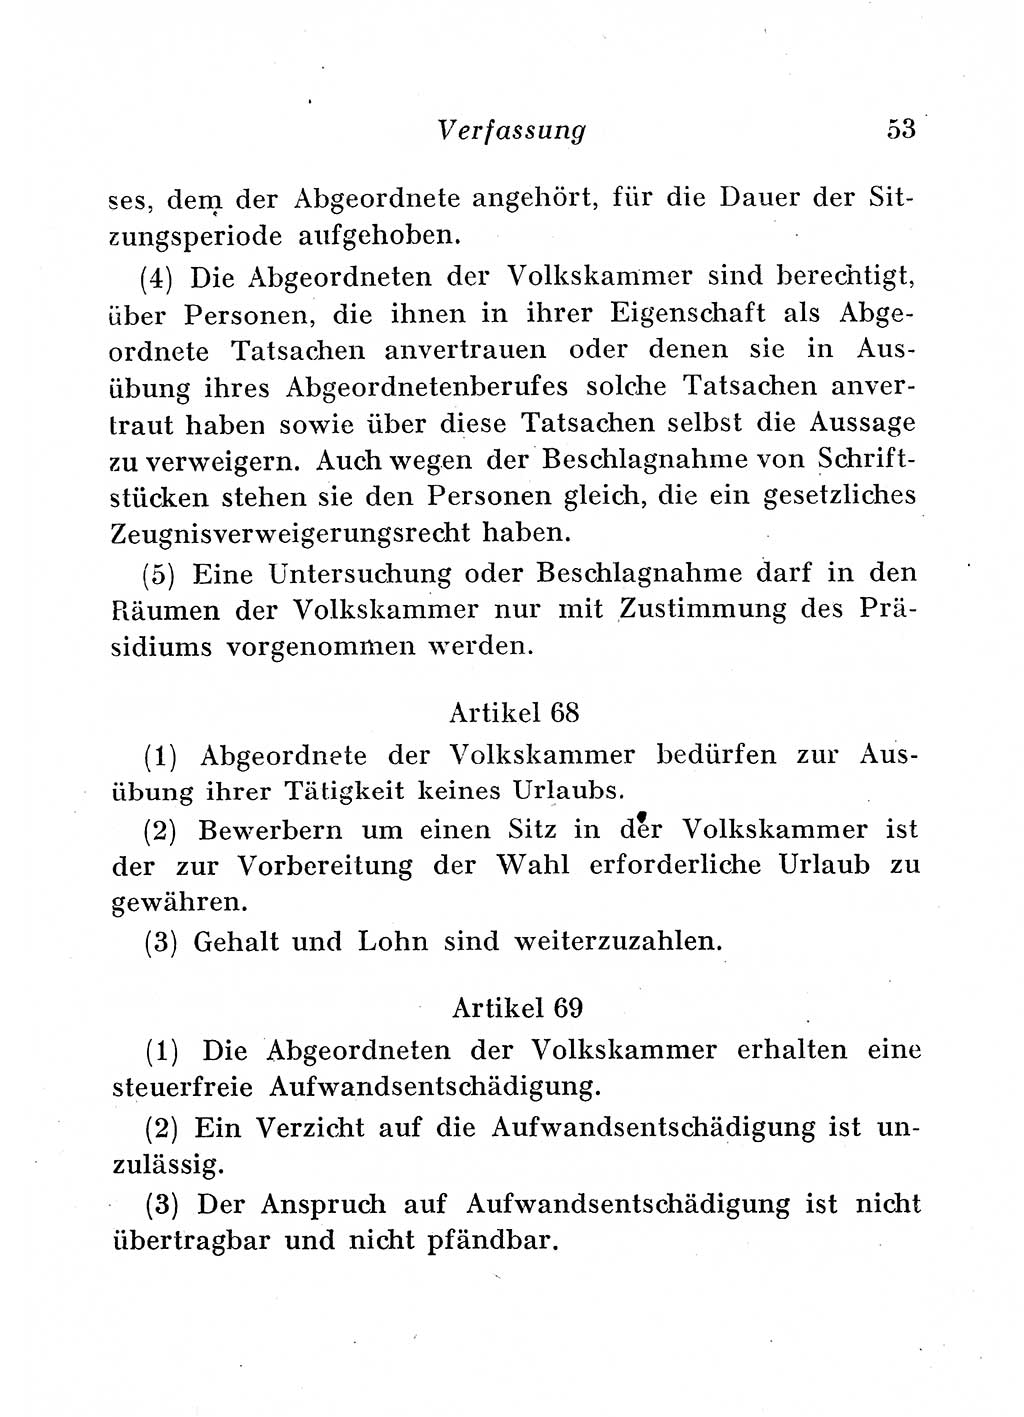 Staats- und verwaltungsrechtliche Gesetze der Deutschen Demokratischen Republik (DDR) 1958, Seite 53 (StVerwR Ges. DDR 1958, S. 53)